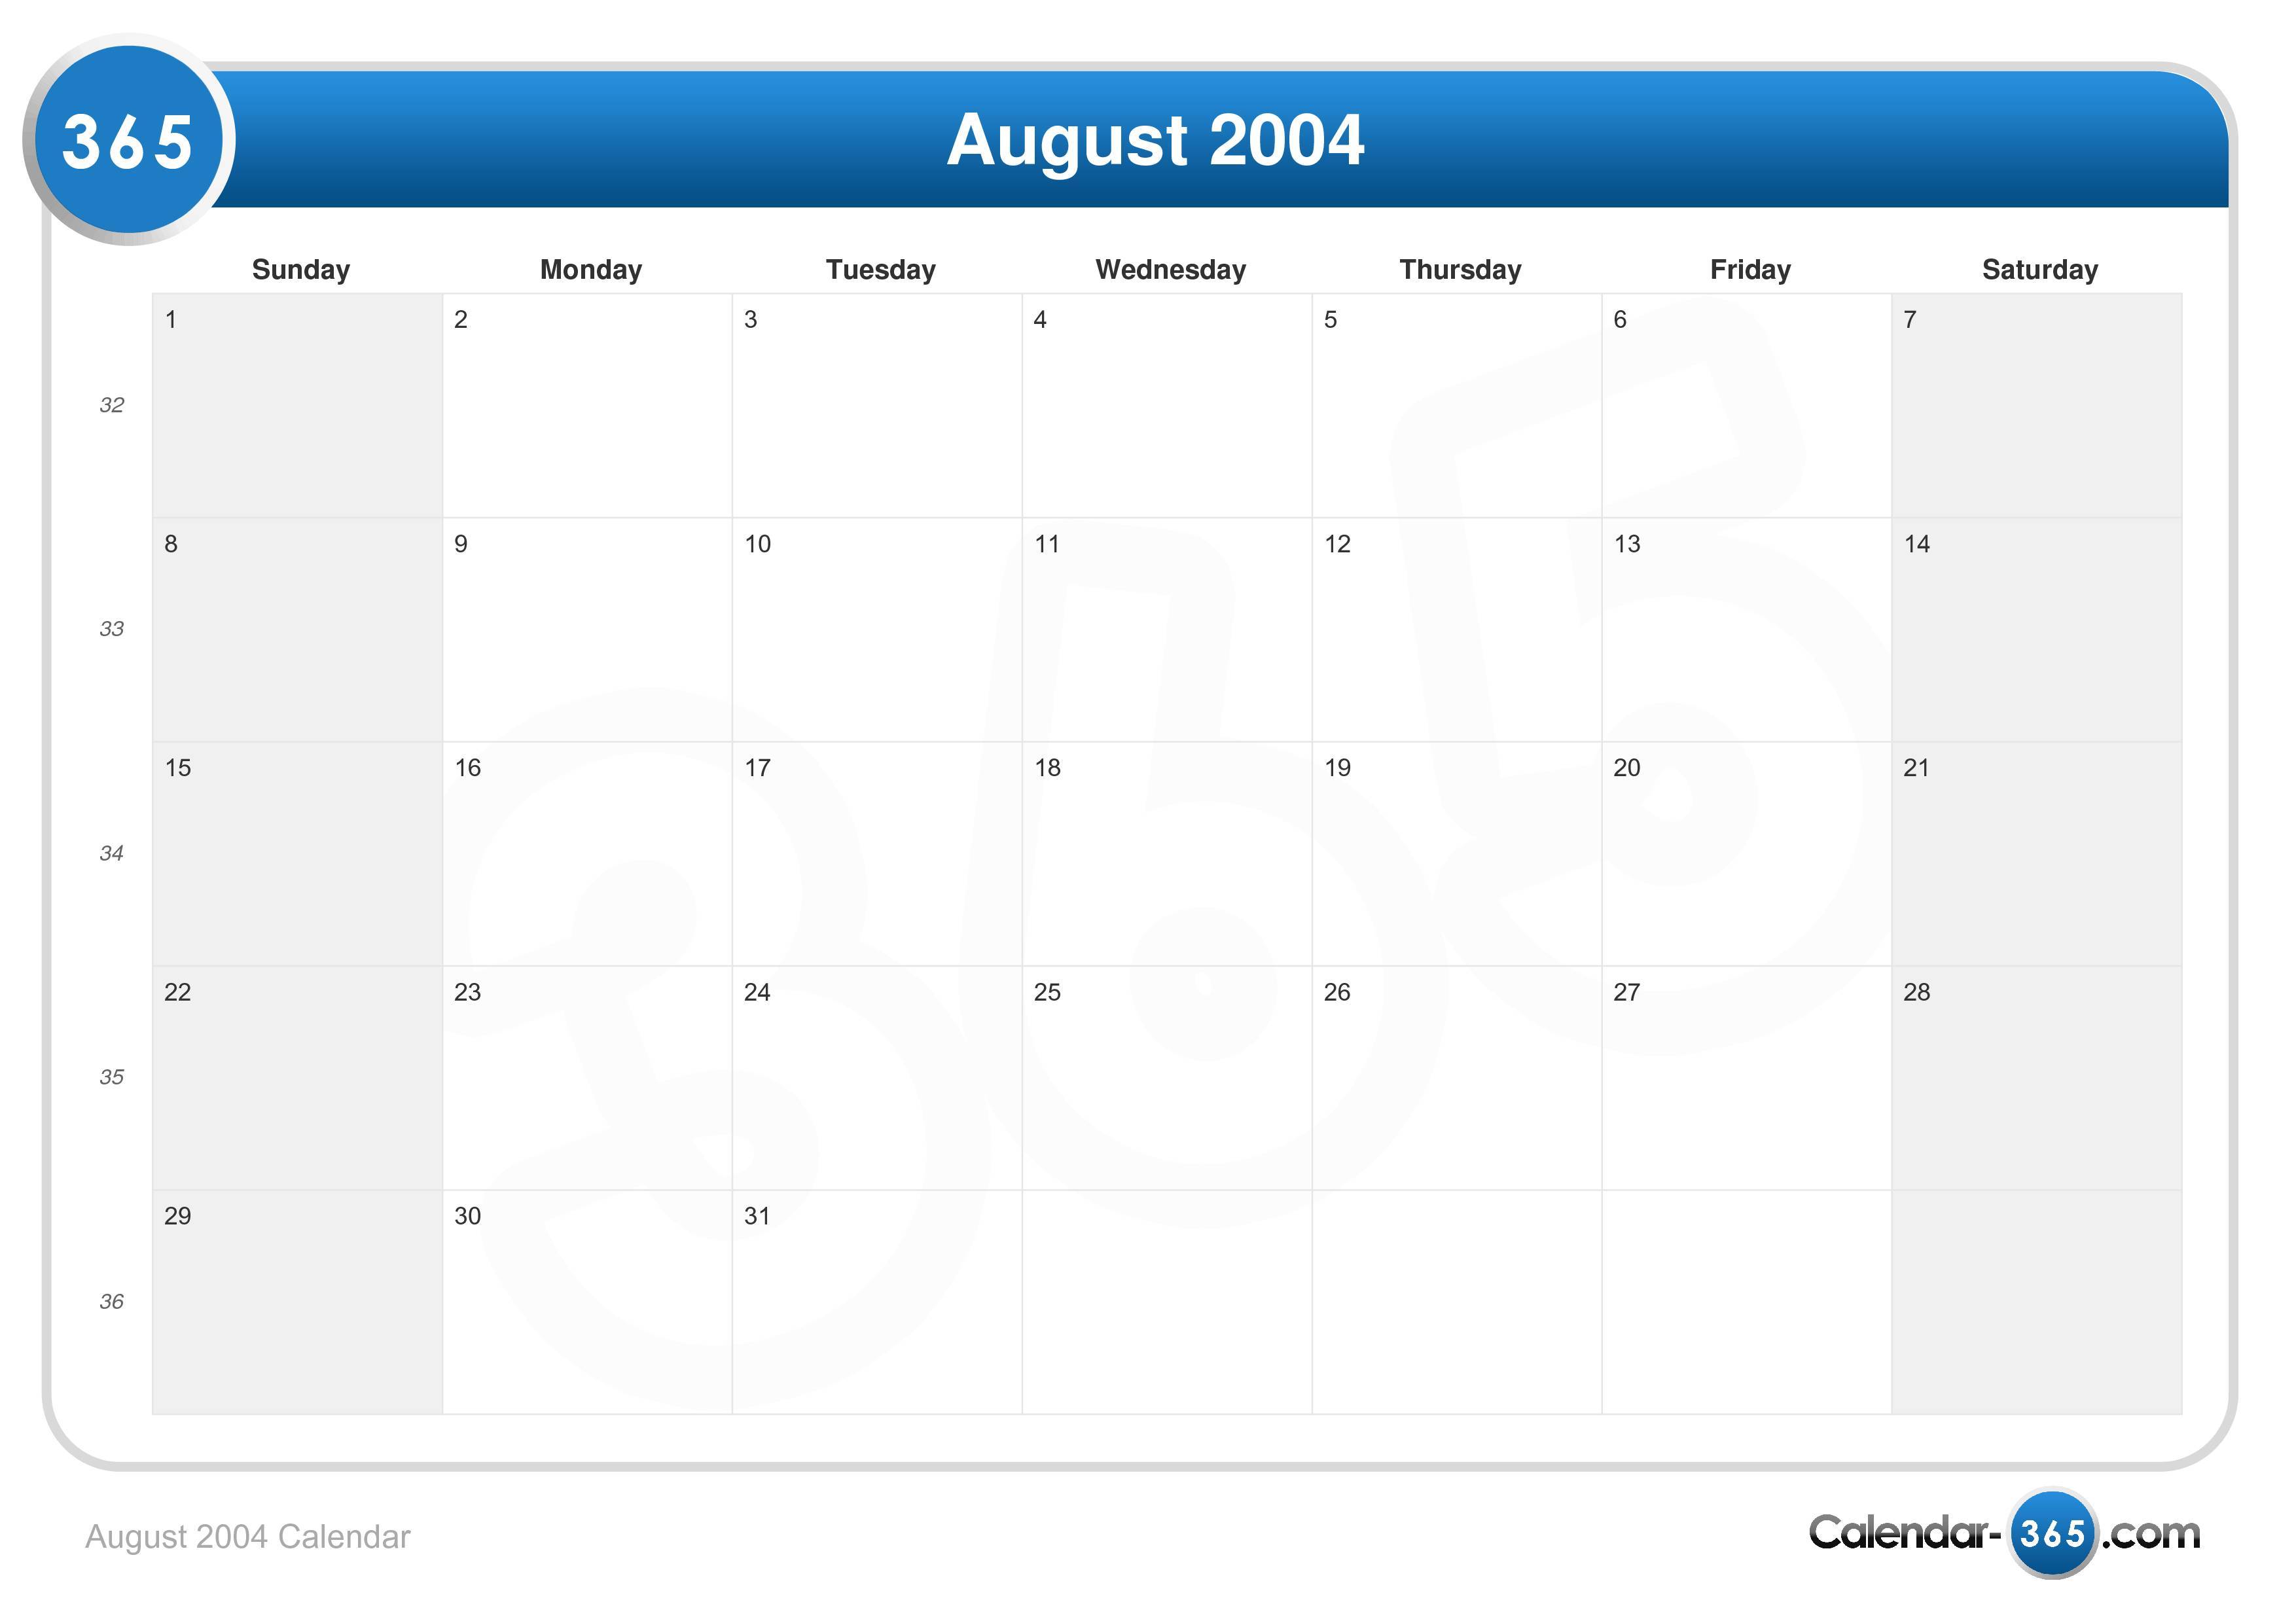 August 2004 Calendar